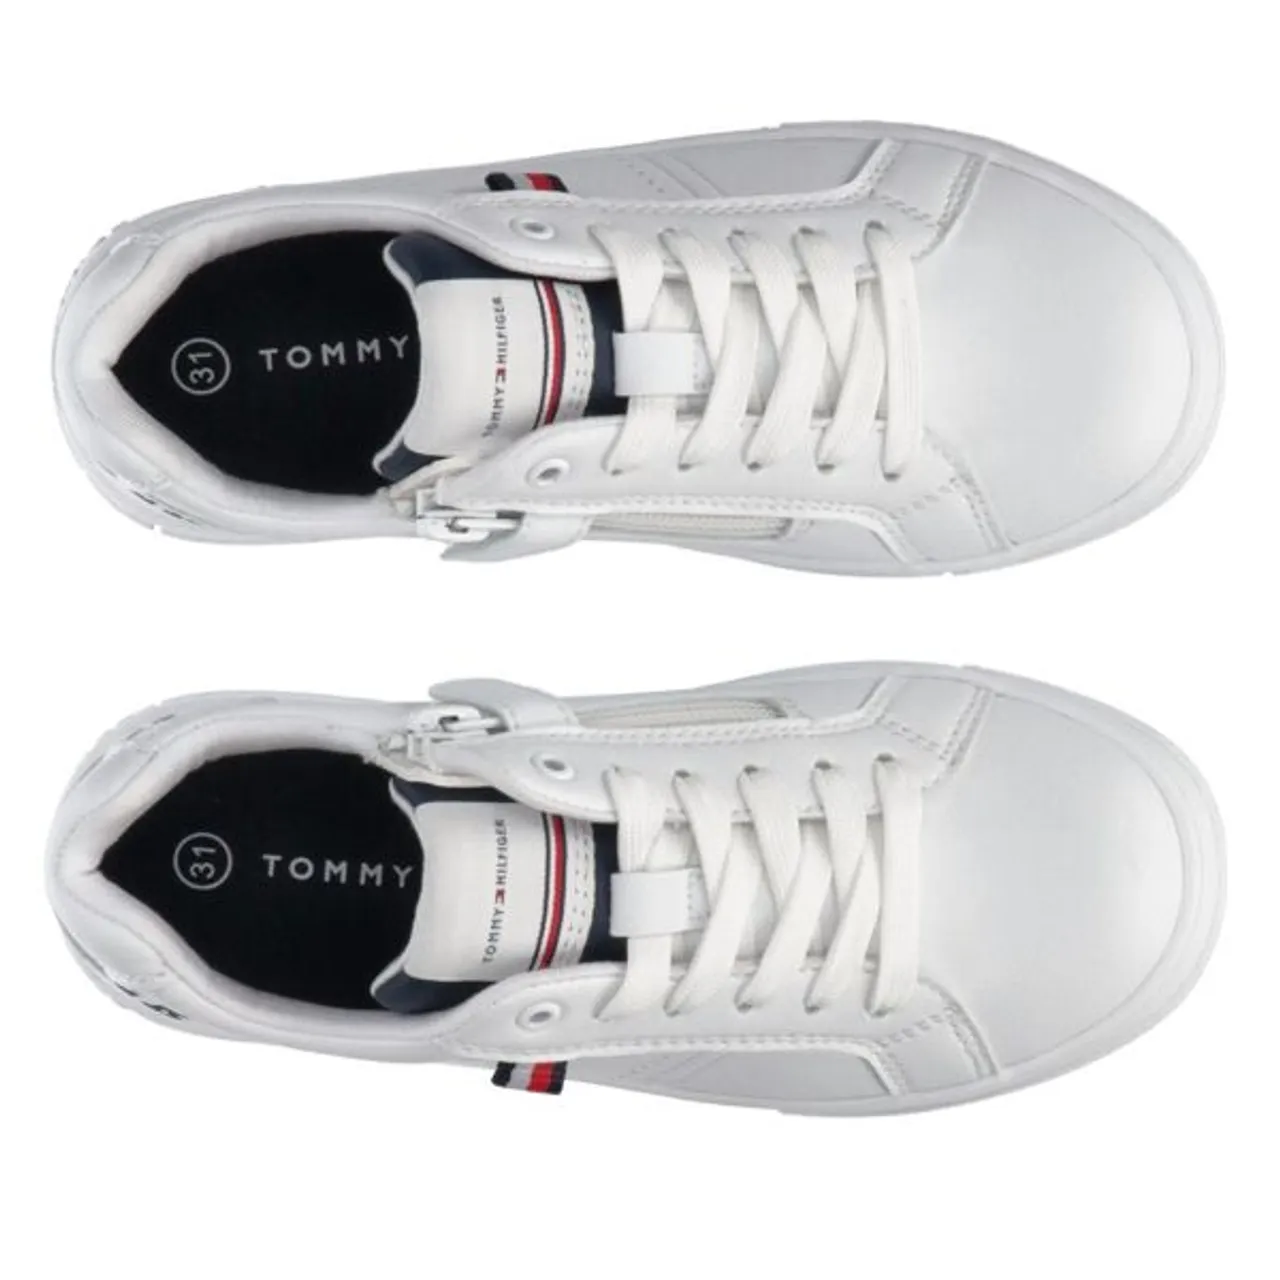 Sneaker TOMMY HILFIGER "LOGO LOW CUT LACE-UP SNEAKER" Gr. 39, weiß (weiß, blau) Kinder Schuhe Sneaker mit Reißverschluss, Freizeitschuh, Halbschuh, Sc...